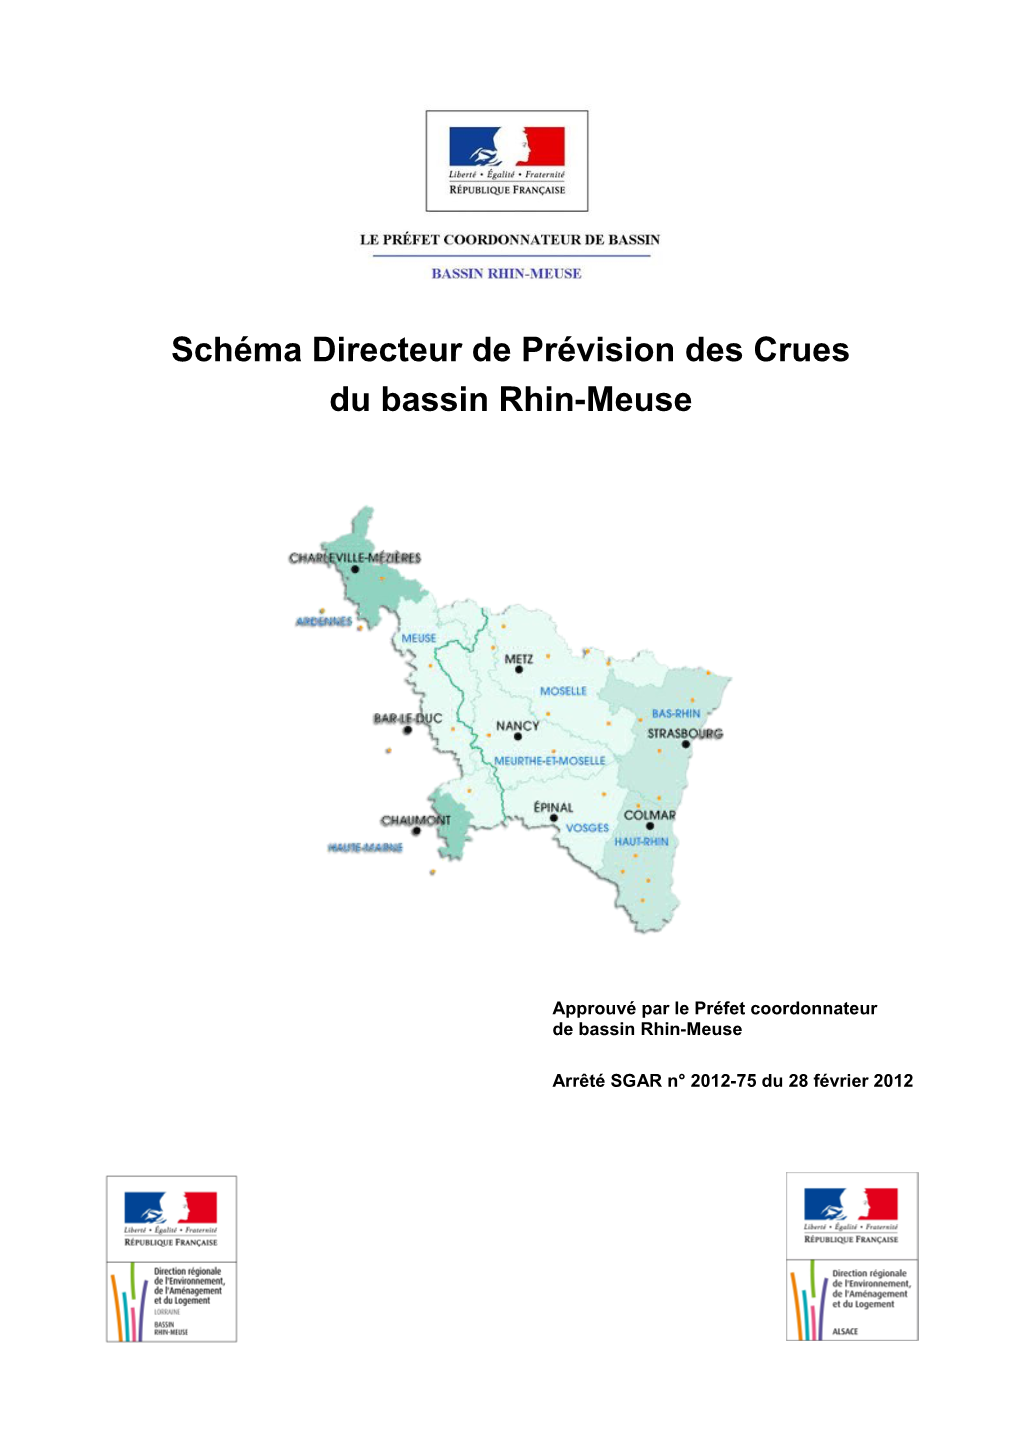 Le Schéma Directeur De Prévision Des Crues Du Bassin Rhin-Meuse